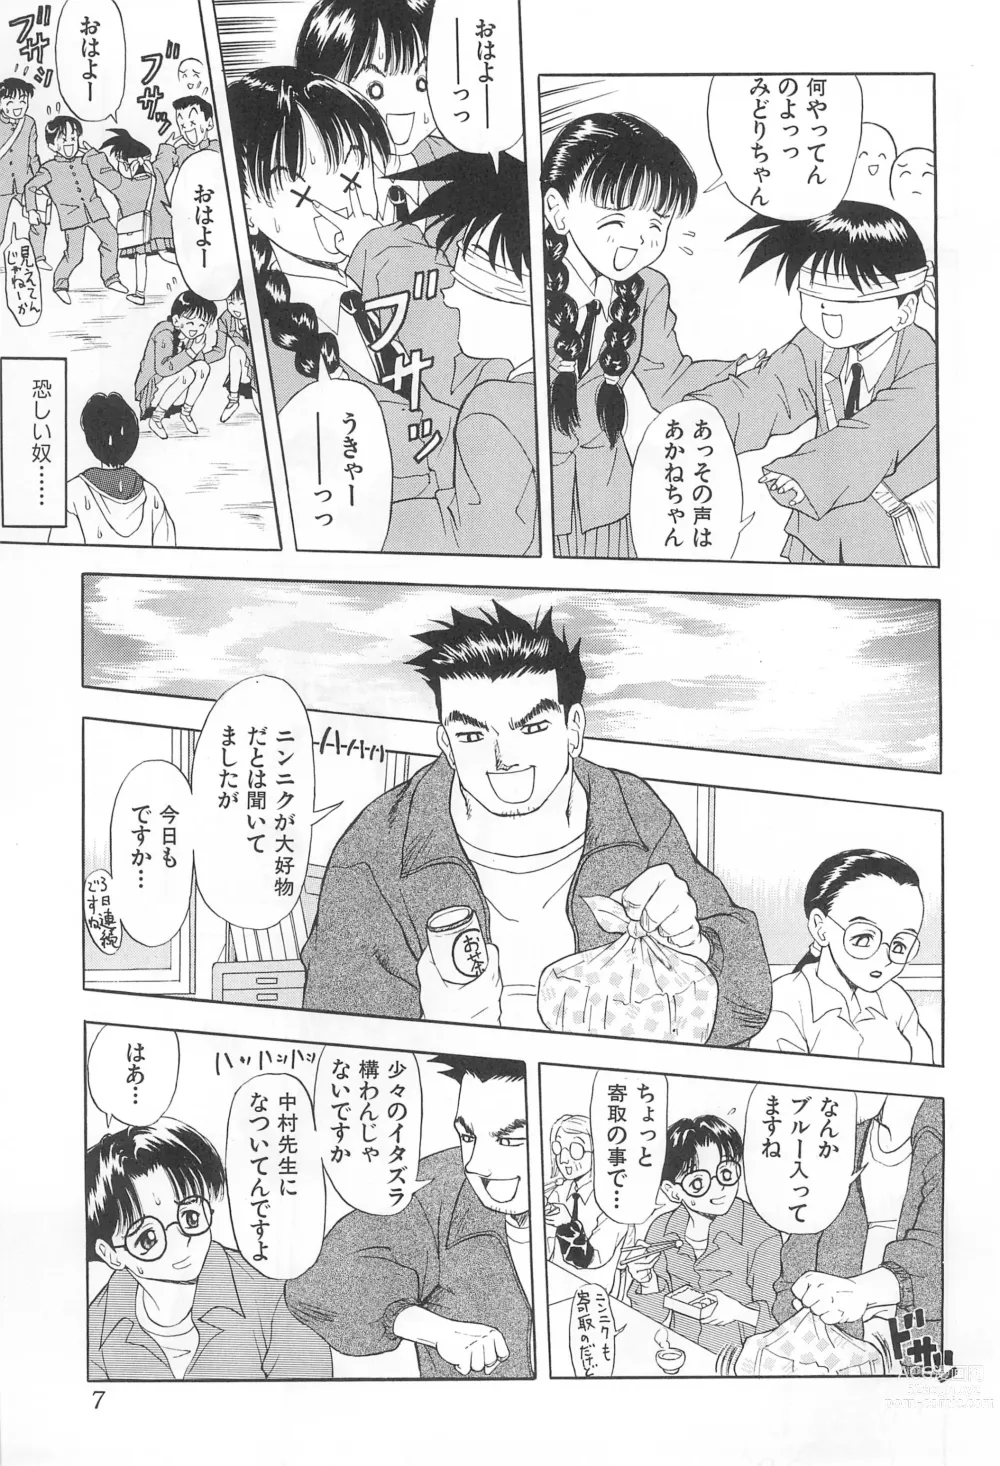 Page 7 of doujinshi Amattaharunen 2